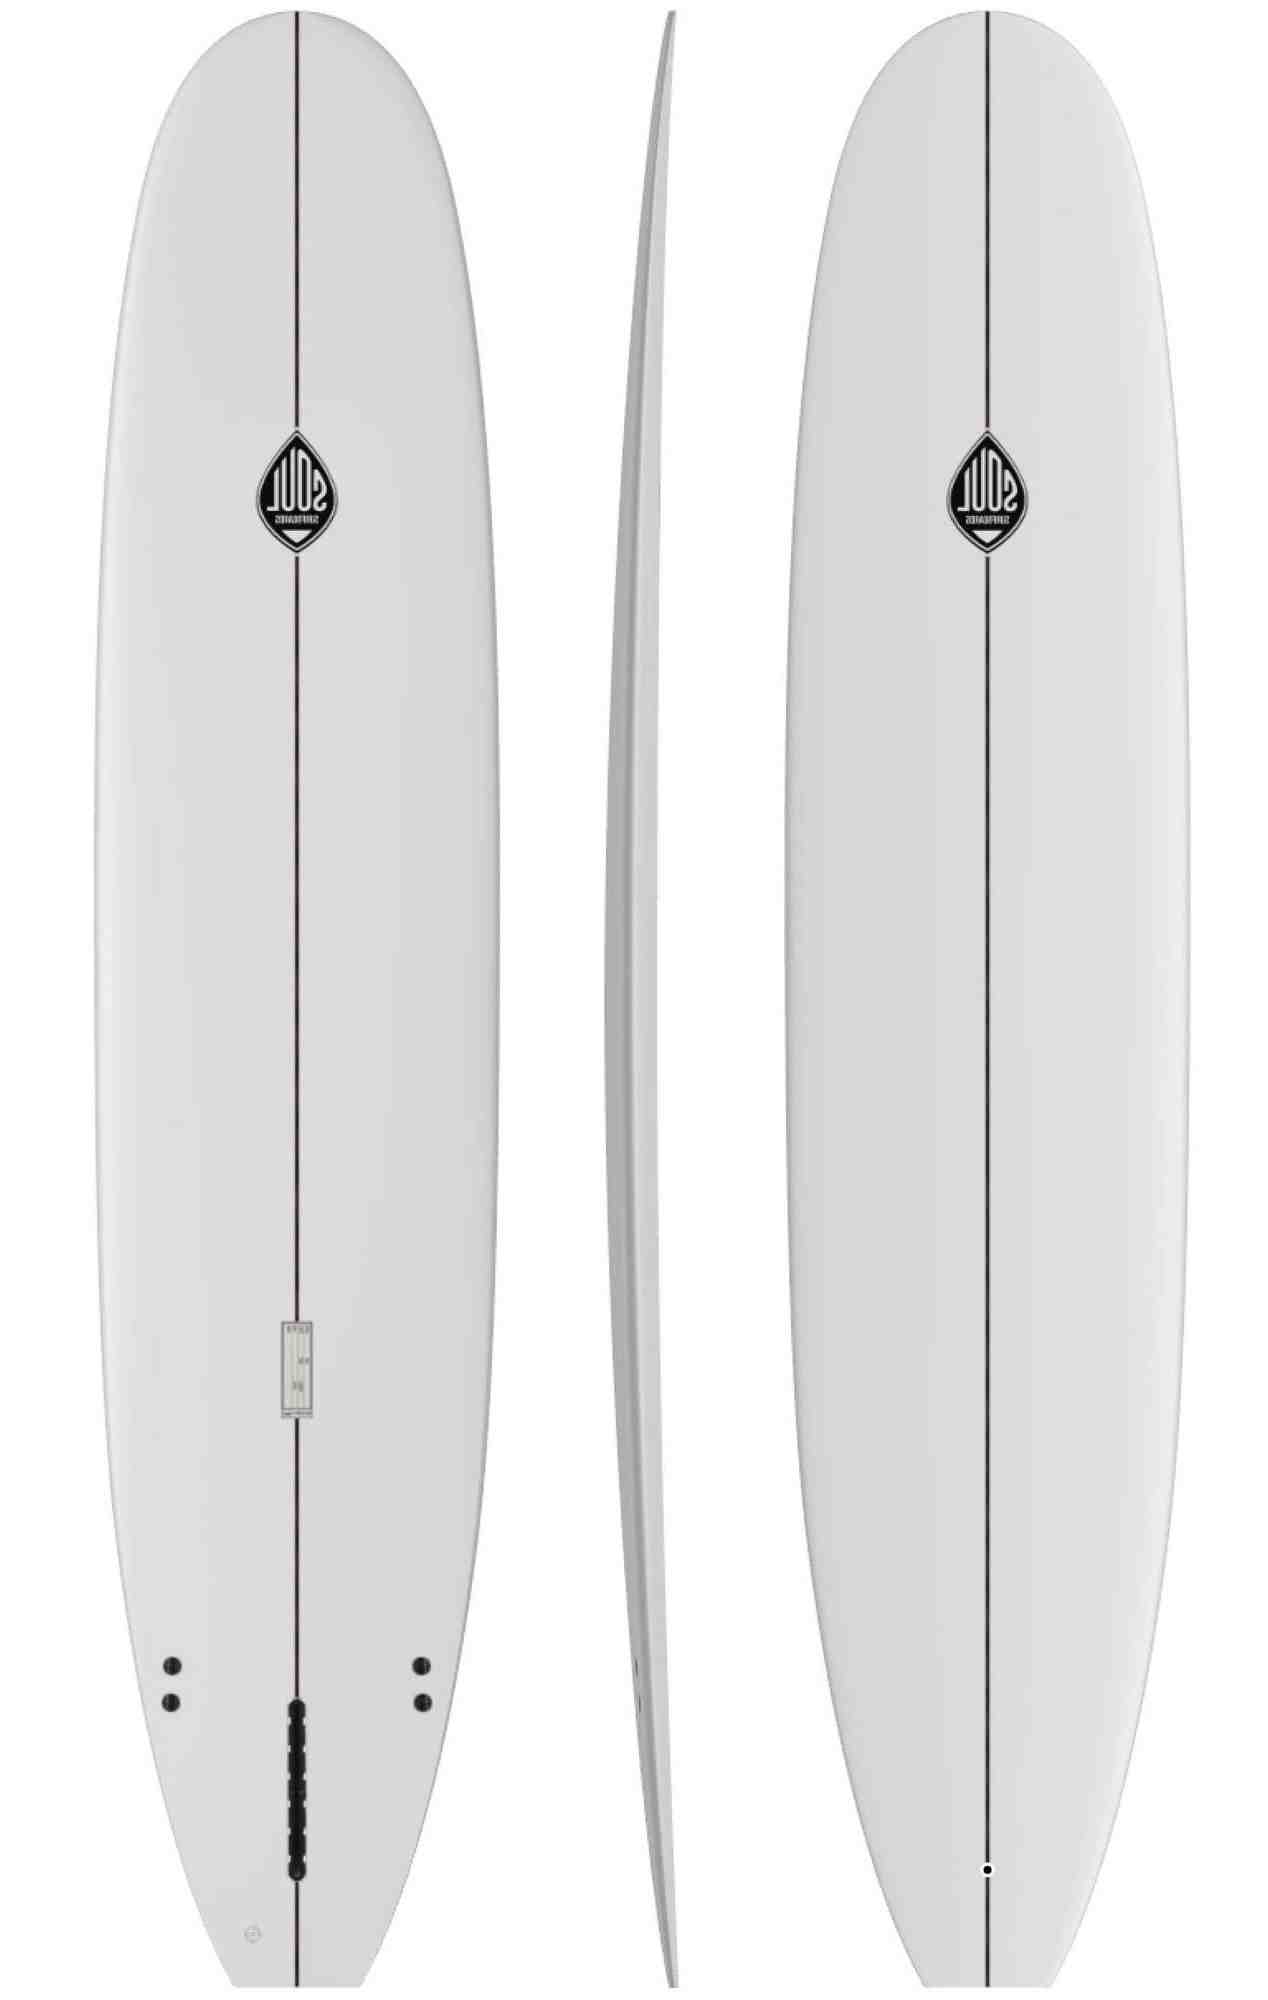 Comment débuter un surf en longboard ?